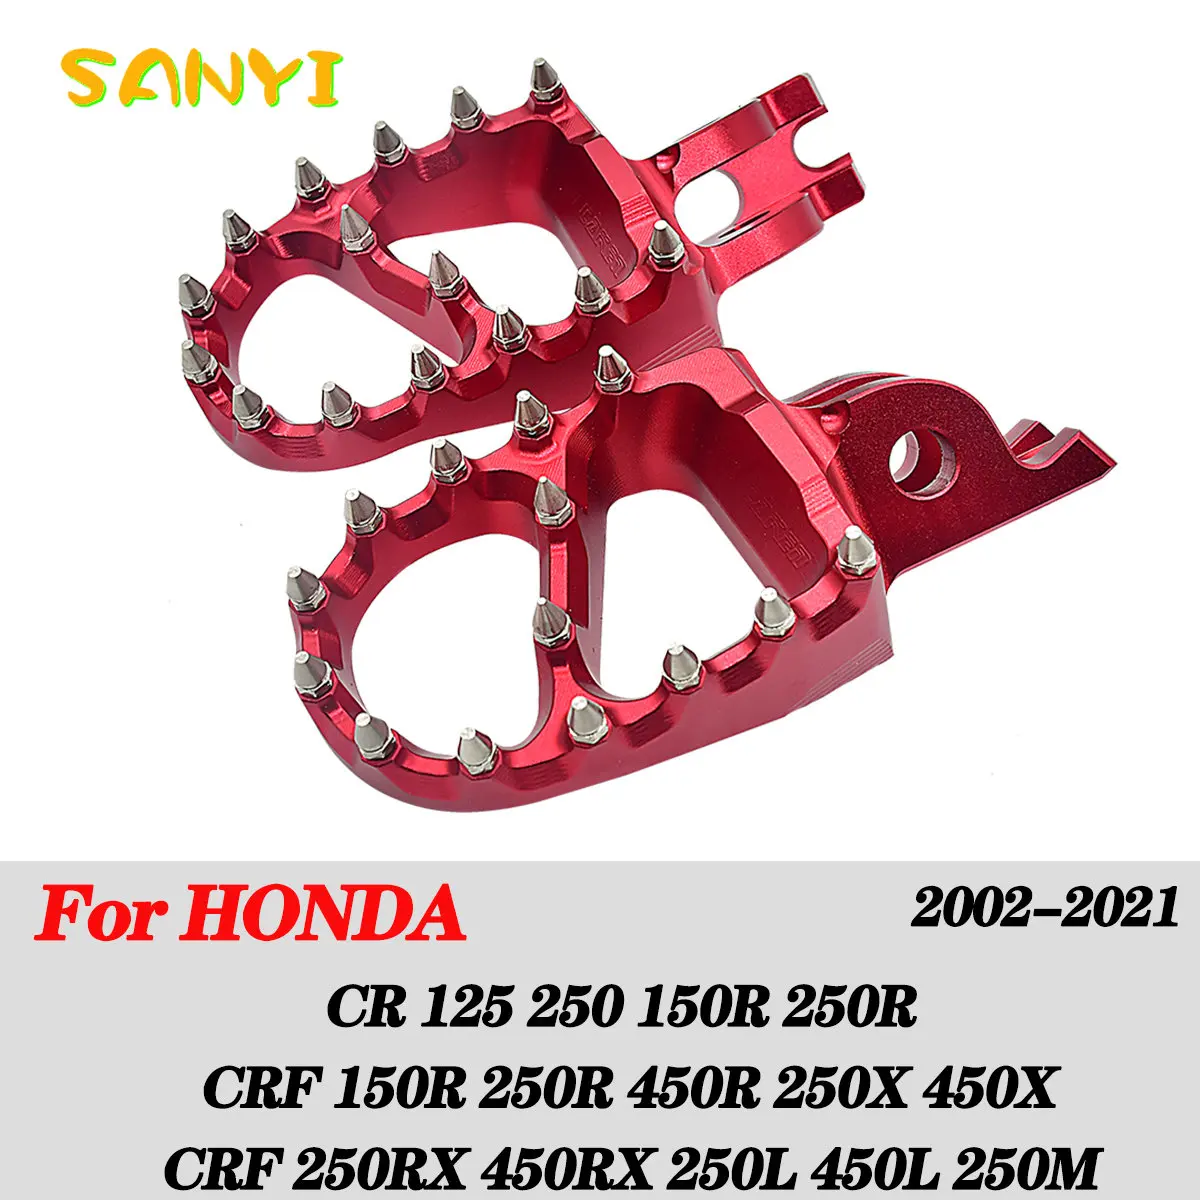 

Motorcycle CNC FootRest Footpegs Foot Pegs Pedals For HONDA CR 125 250 150R CR250R CRF 150R 250R 450R 250 450 X RX L M 2002-2021